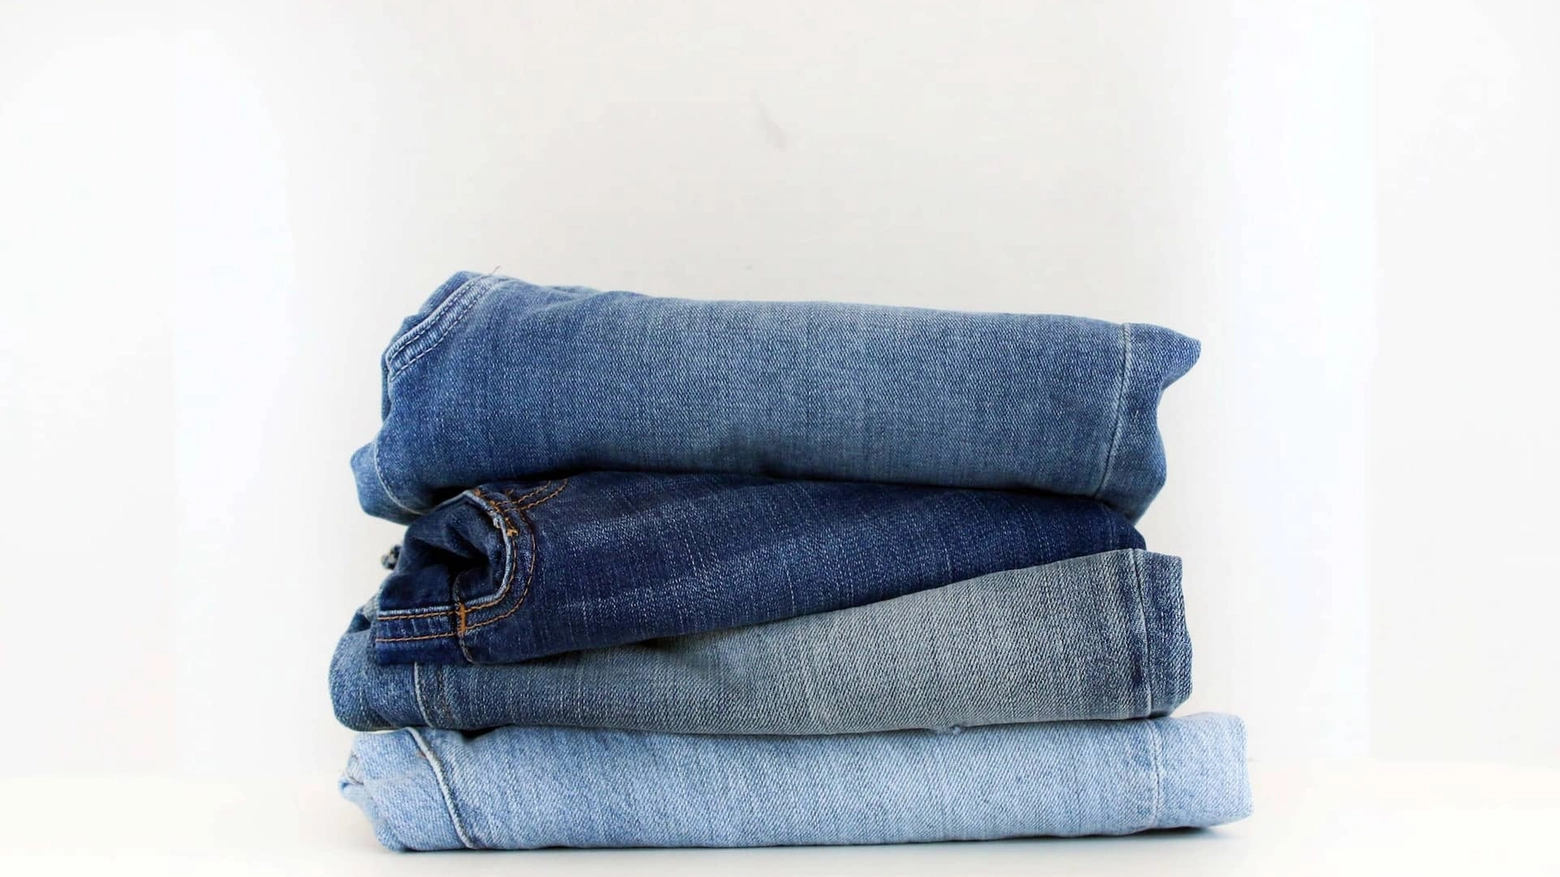 Alcuni tipi di lavorazione dei jeans, quelle più economiche, sprigionano microfibre nell'aria. Respirarle è rischioso